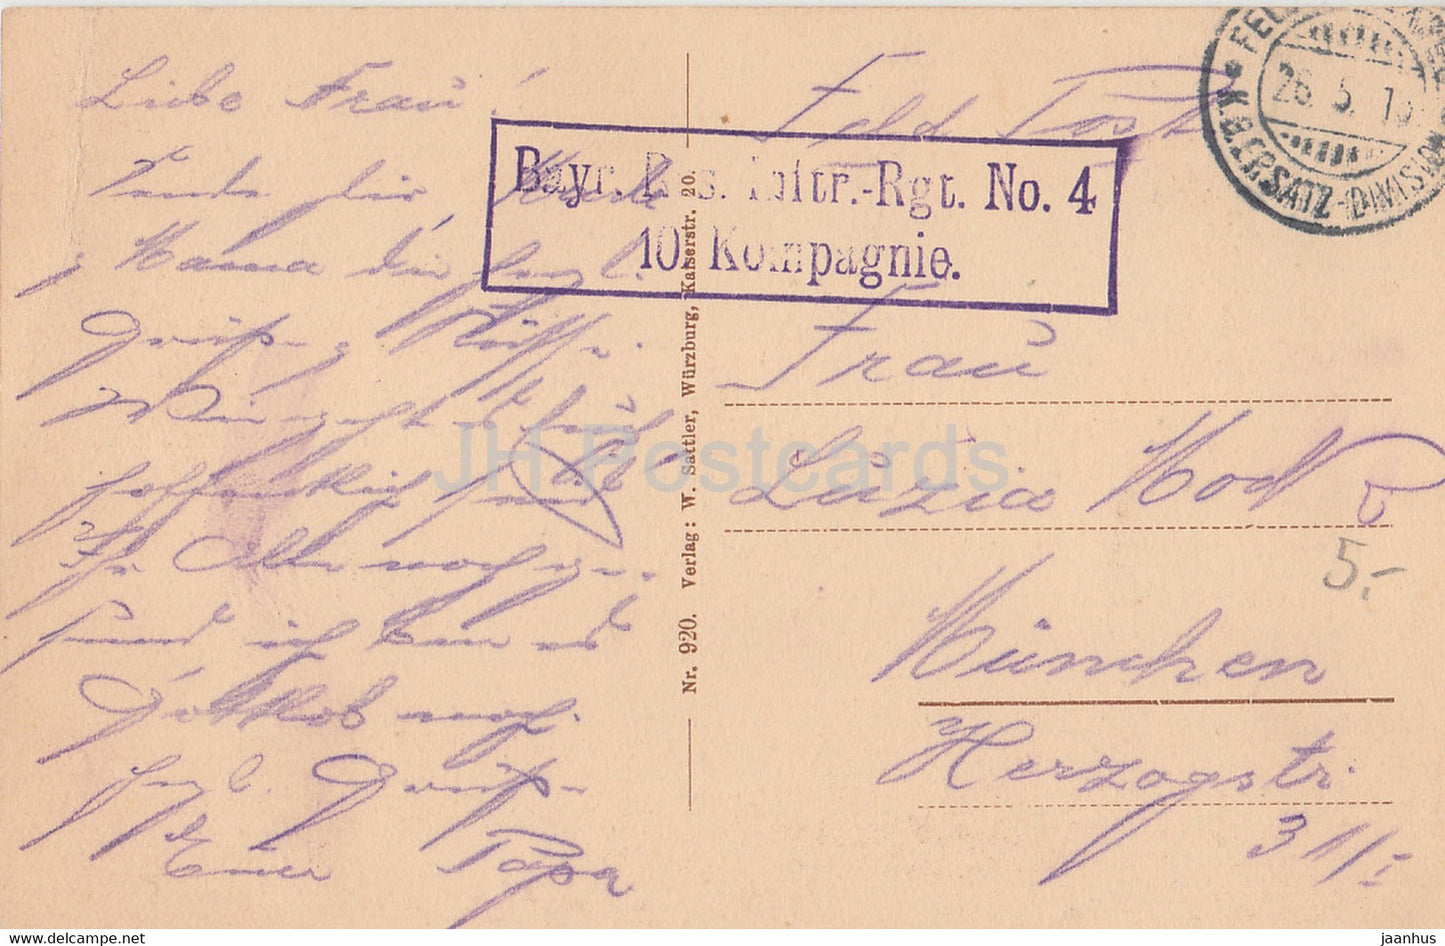 Würzburg - Kgl Residenz - Rückseite - Feldpost - Inft Rgt Nr. 4 10 Kompagnie - 920 - alte Postkarte - Deutschland - gebraucht